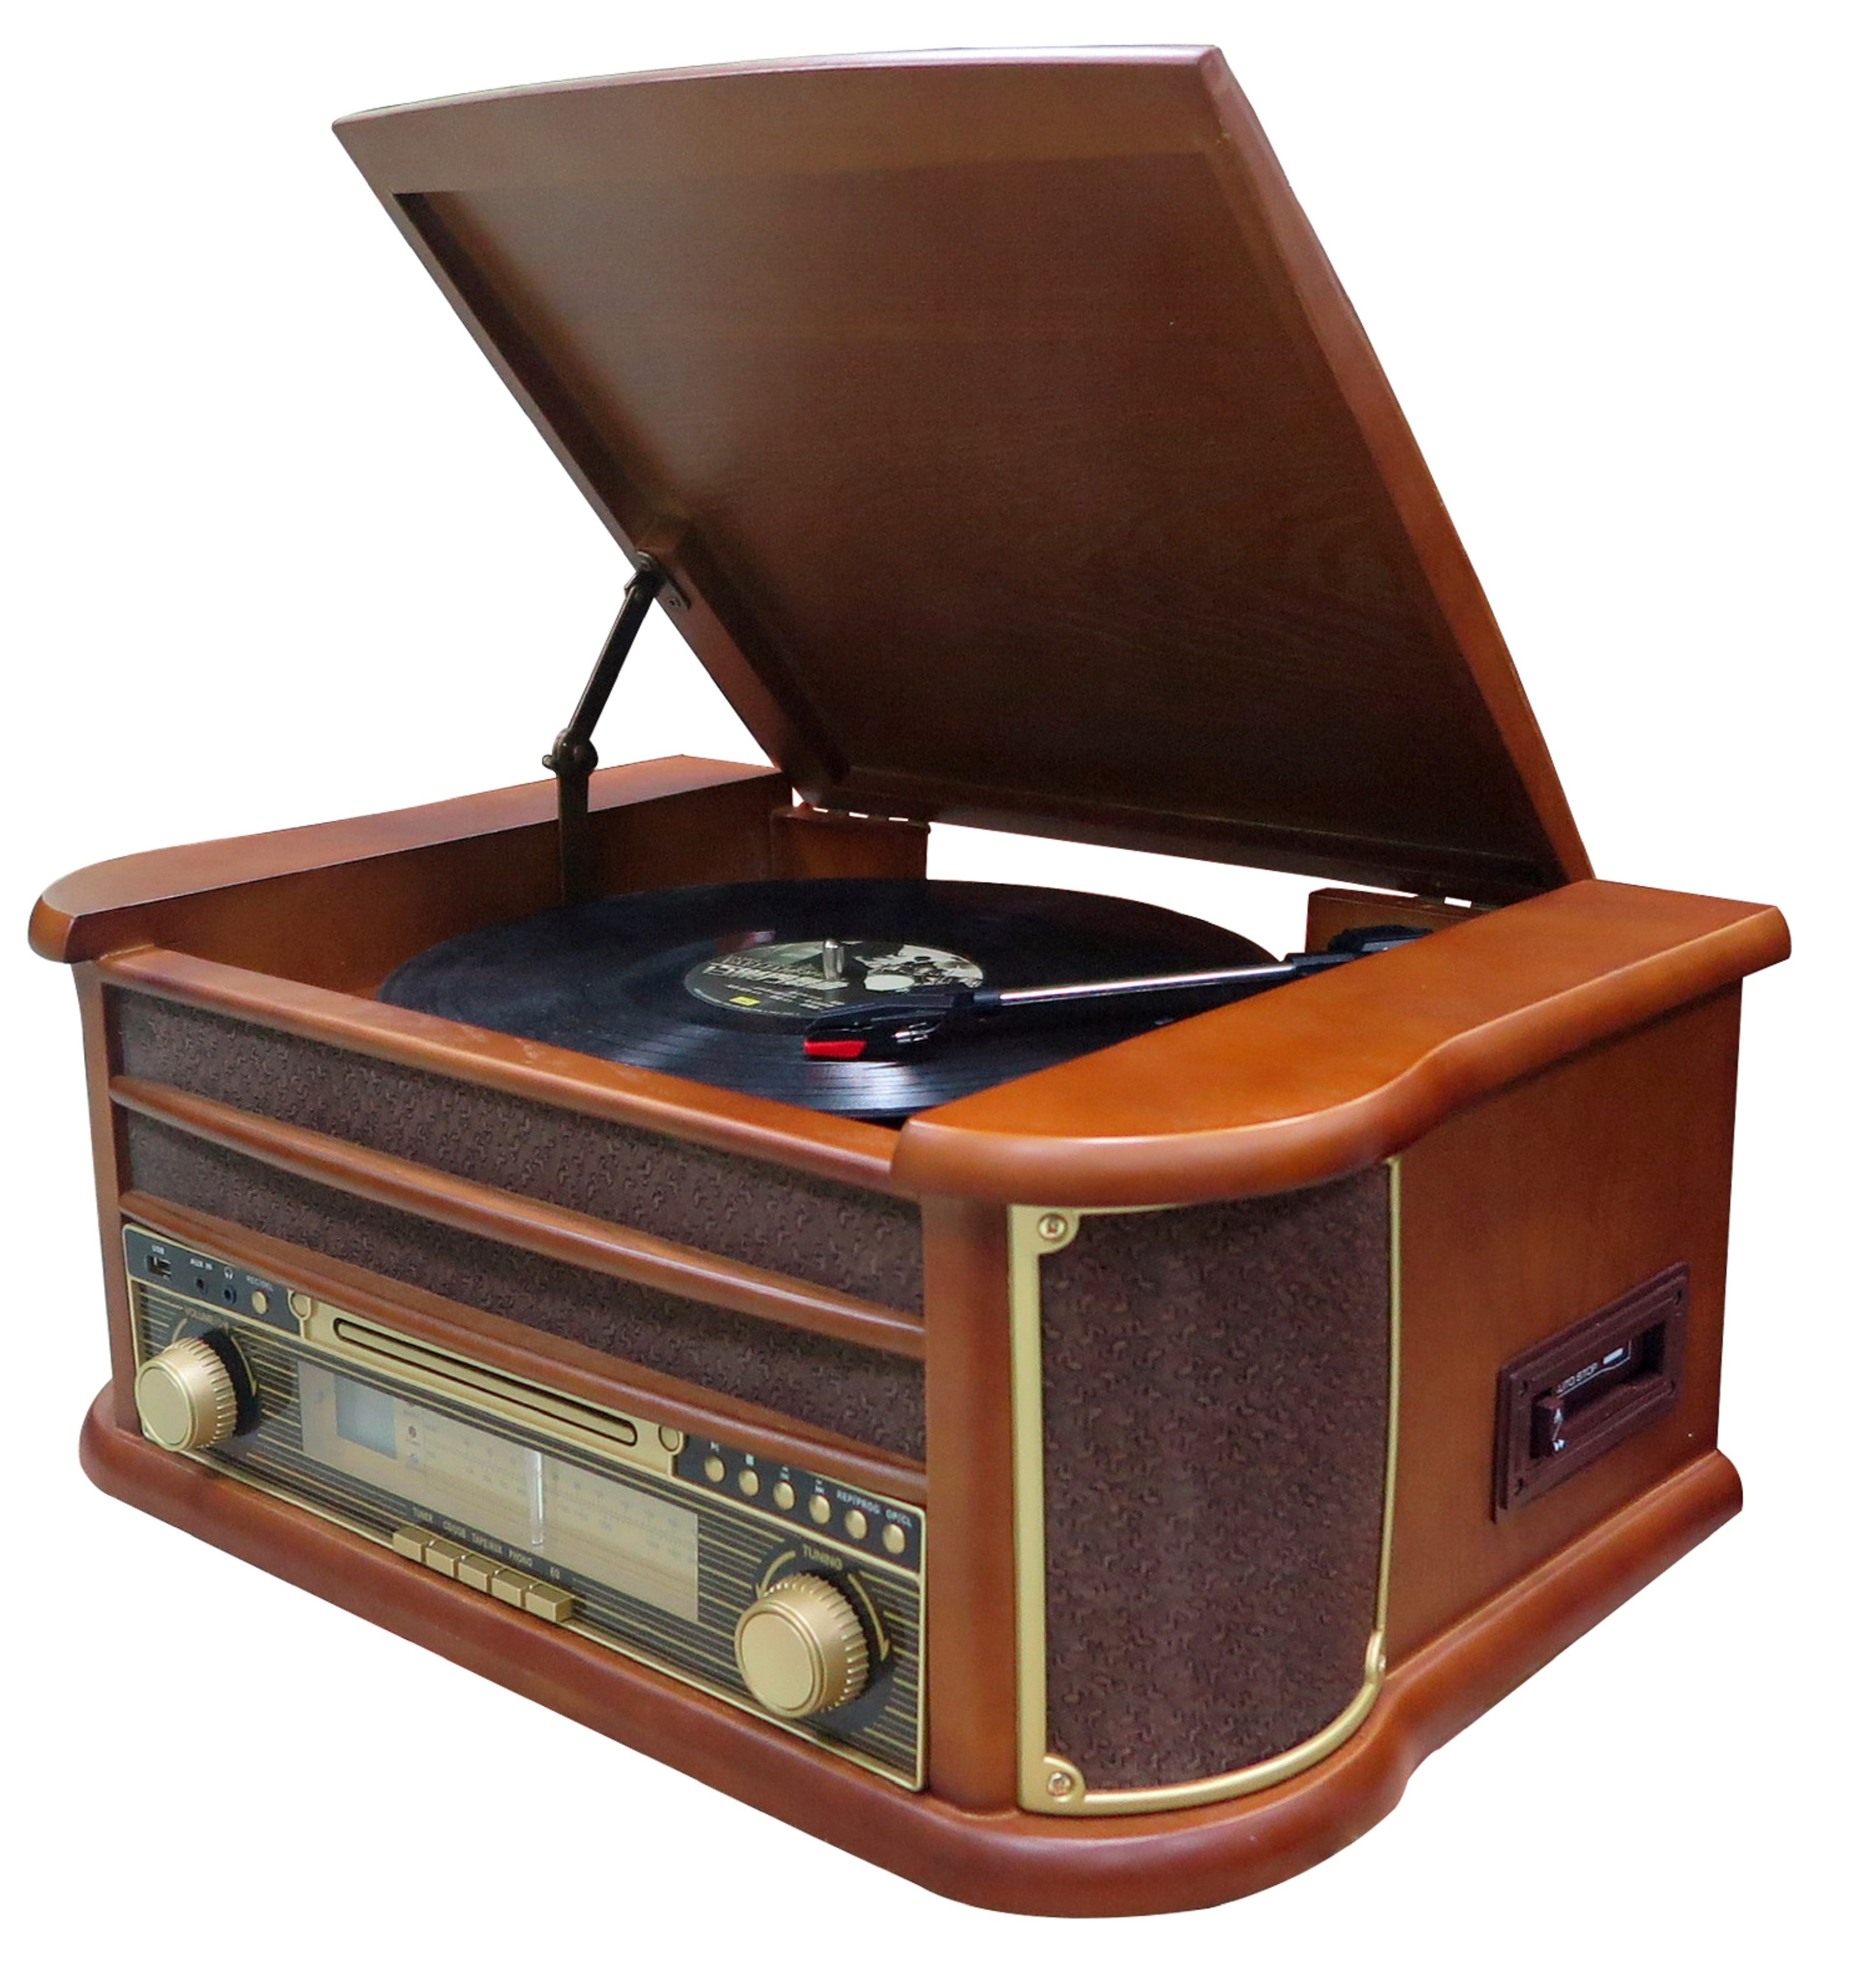 CYBERLUX CL-3010 Plattenspieler Nostalgie Retro Brown) Kompaktanlage Musikanlage (Bolton